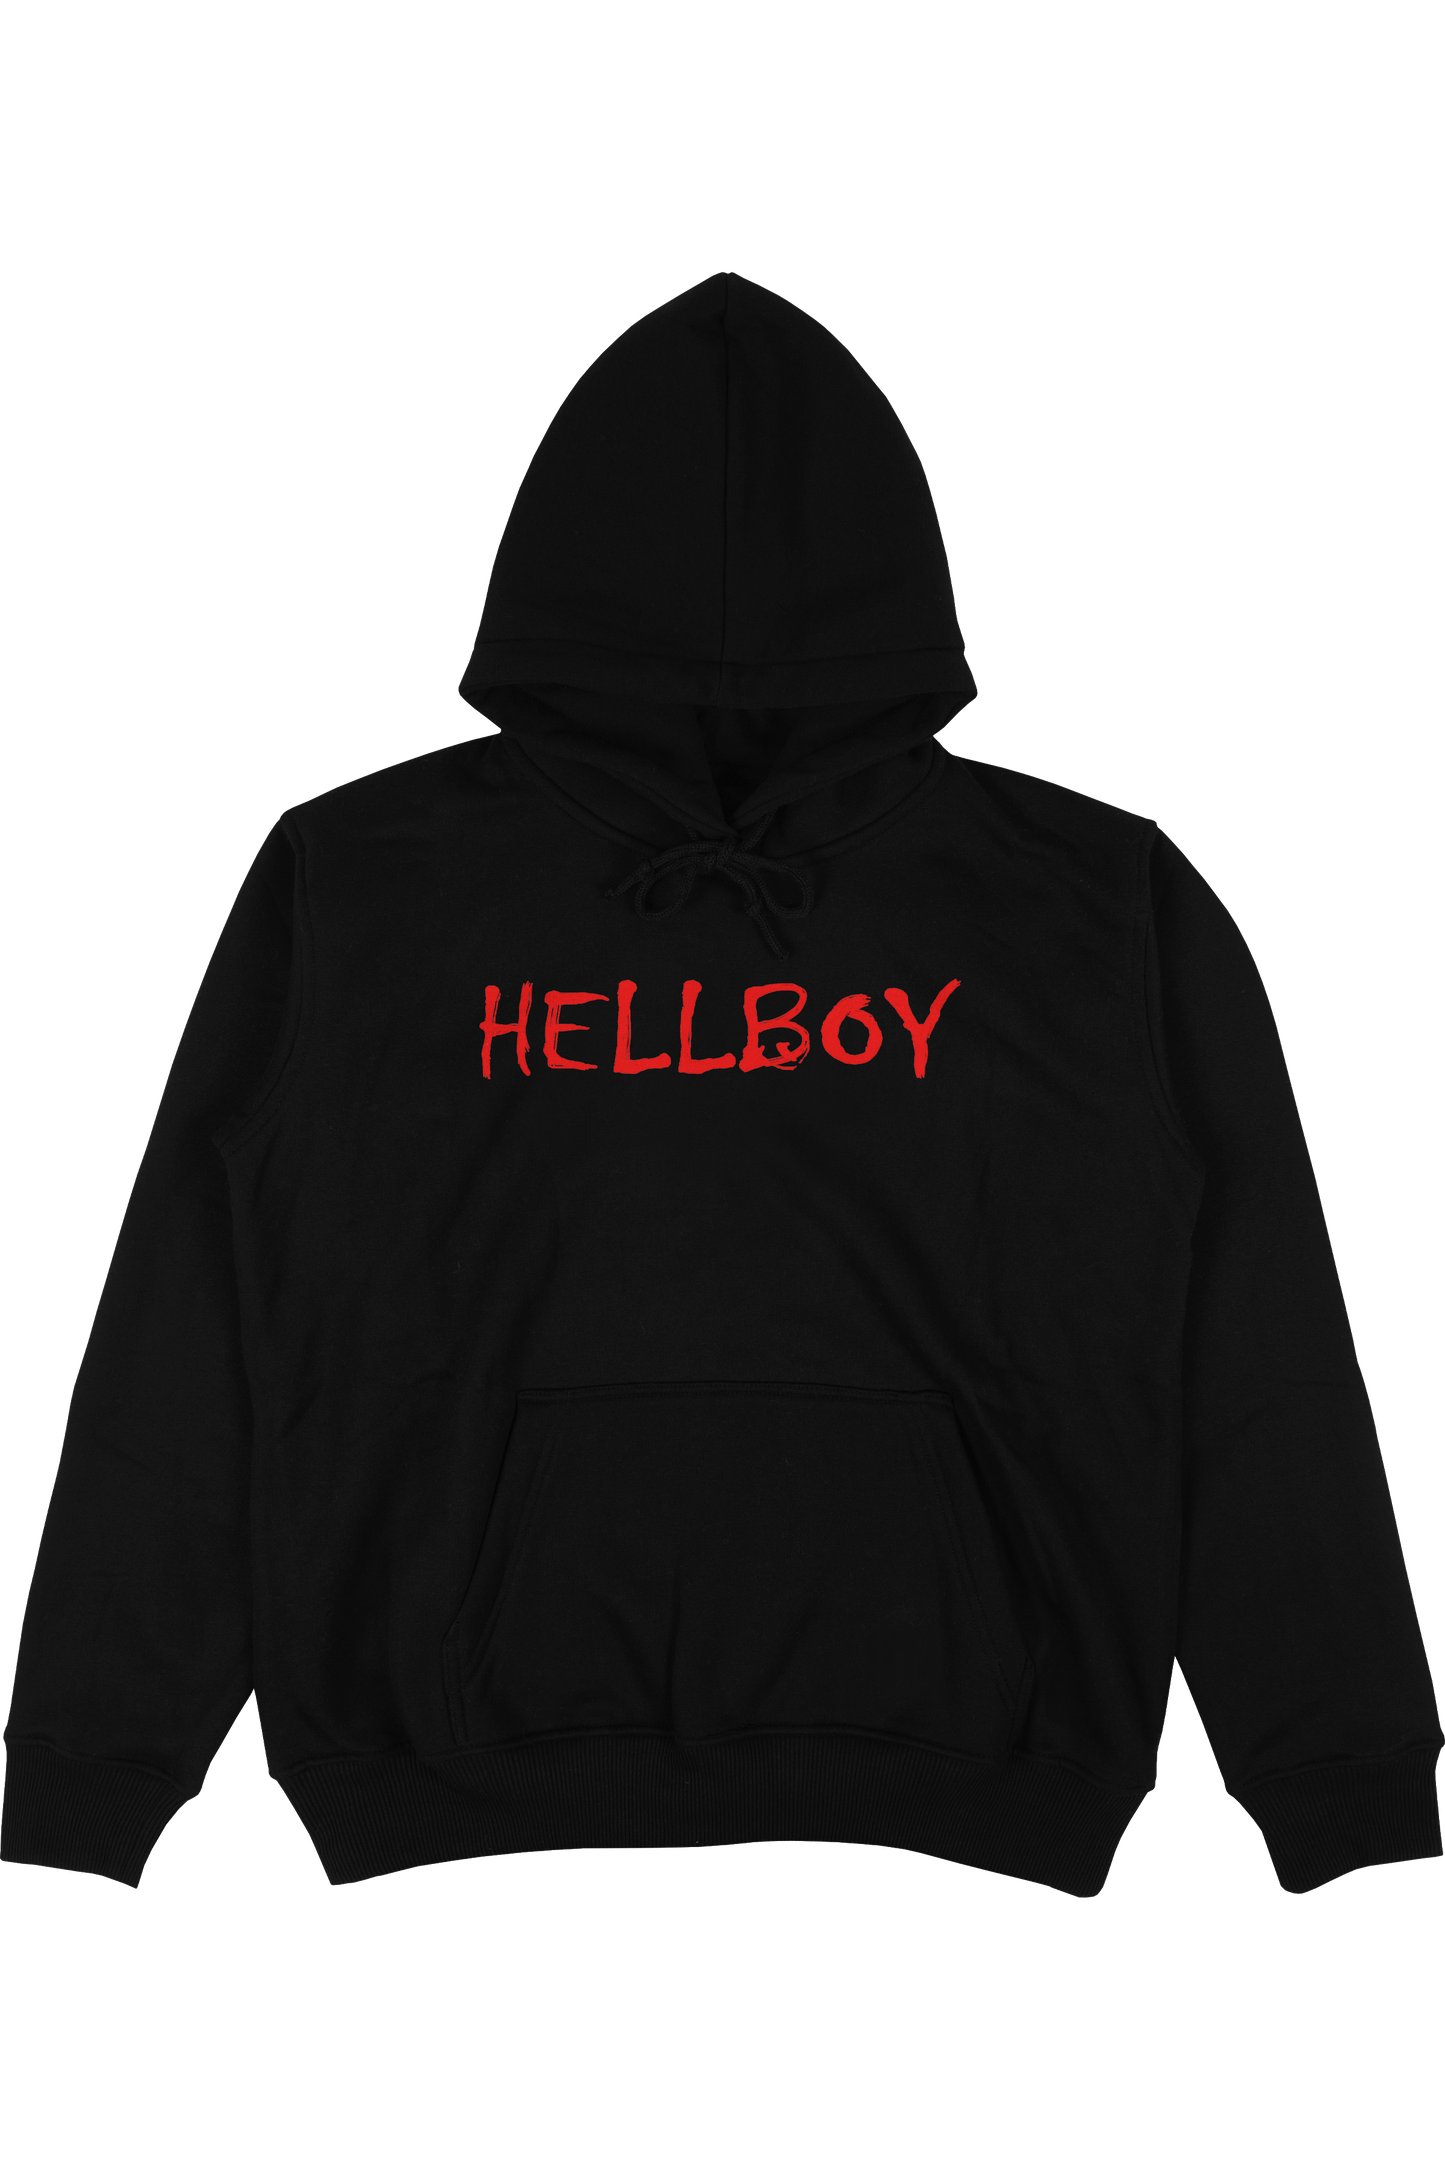 
                  
                    Hellboy
                  
                